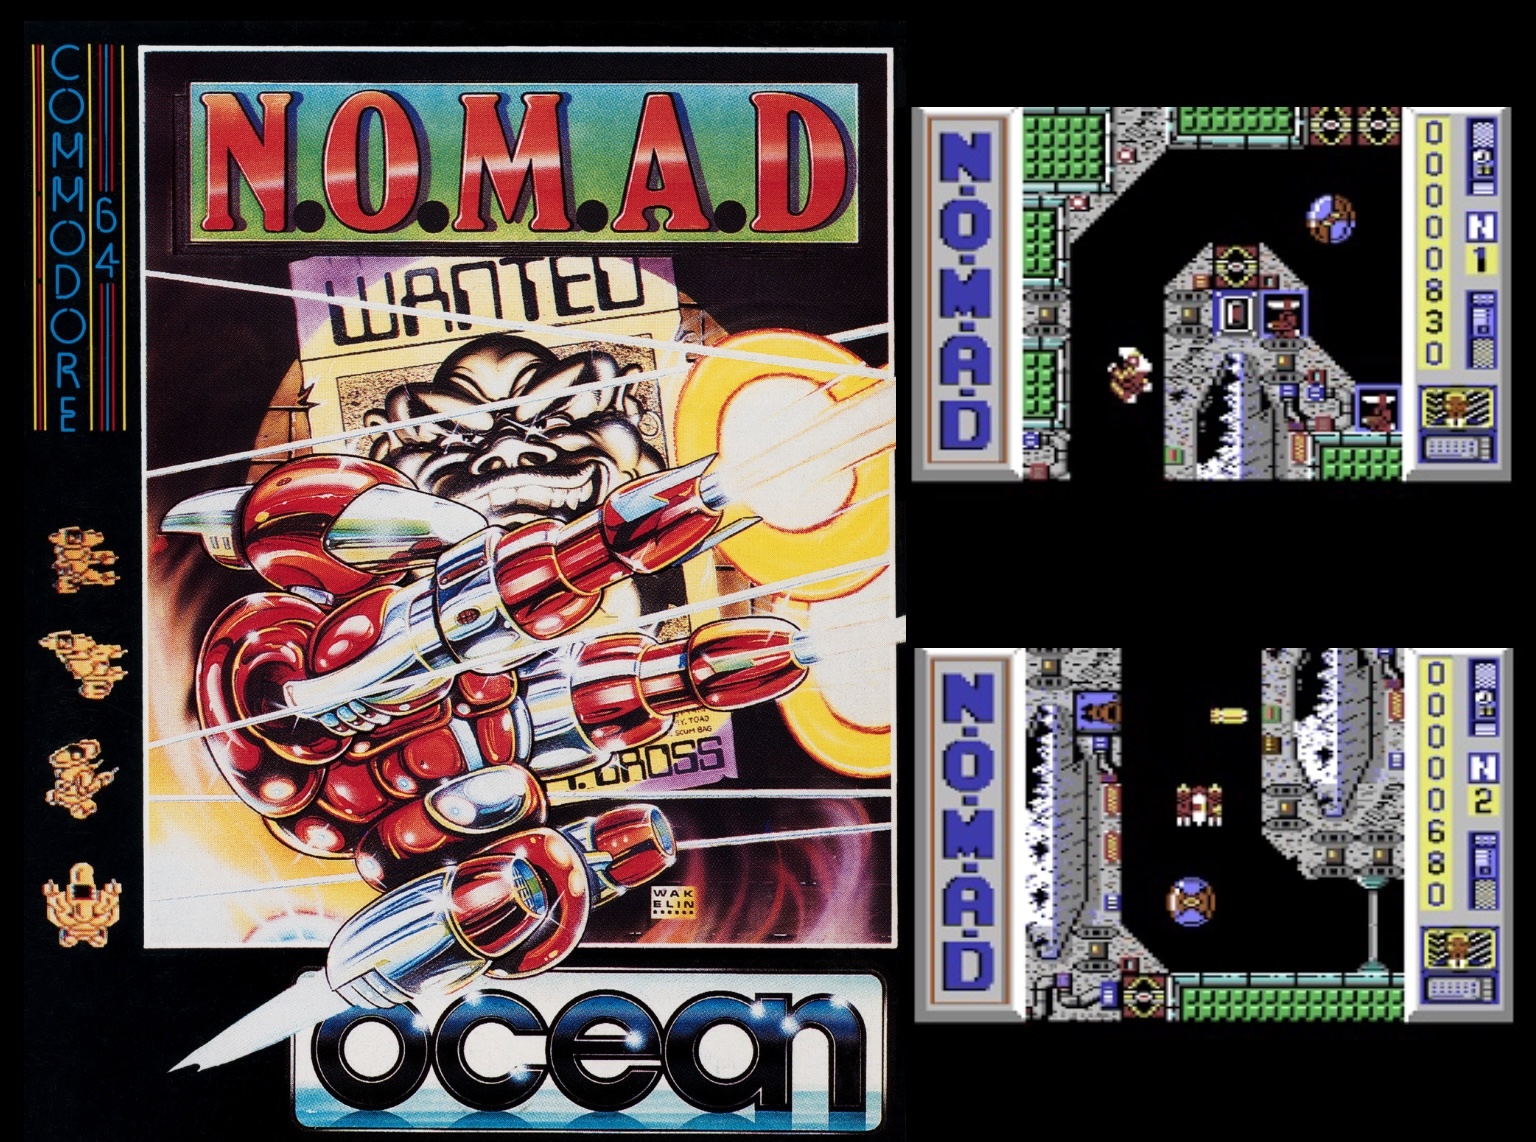 Ocean wertet das packende Action-Adventure N.O.M.A.D. mit wuchtigem Packungsdesign aus der Feder Bob Wakelins auf. Quelle: lemon64.com